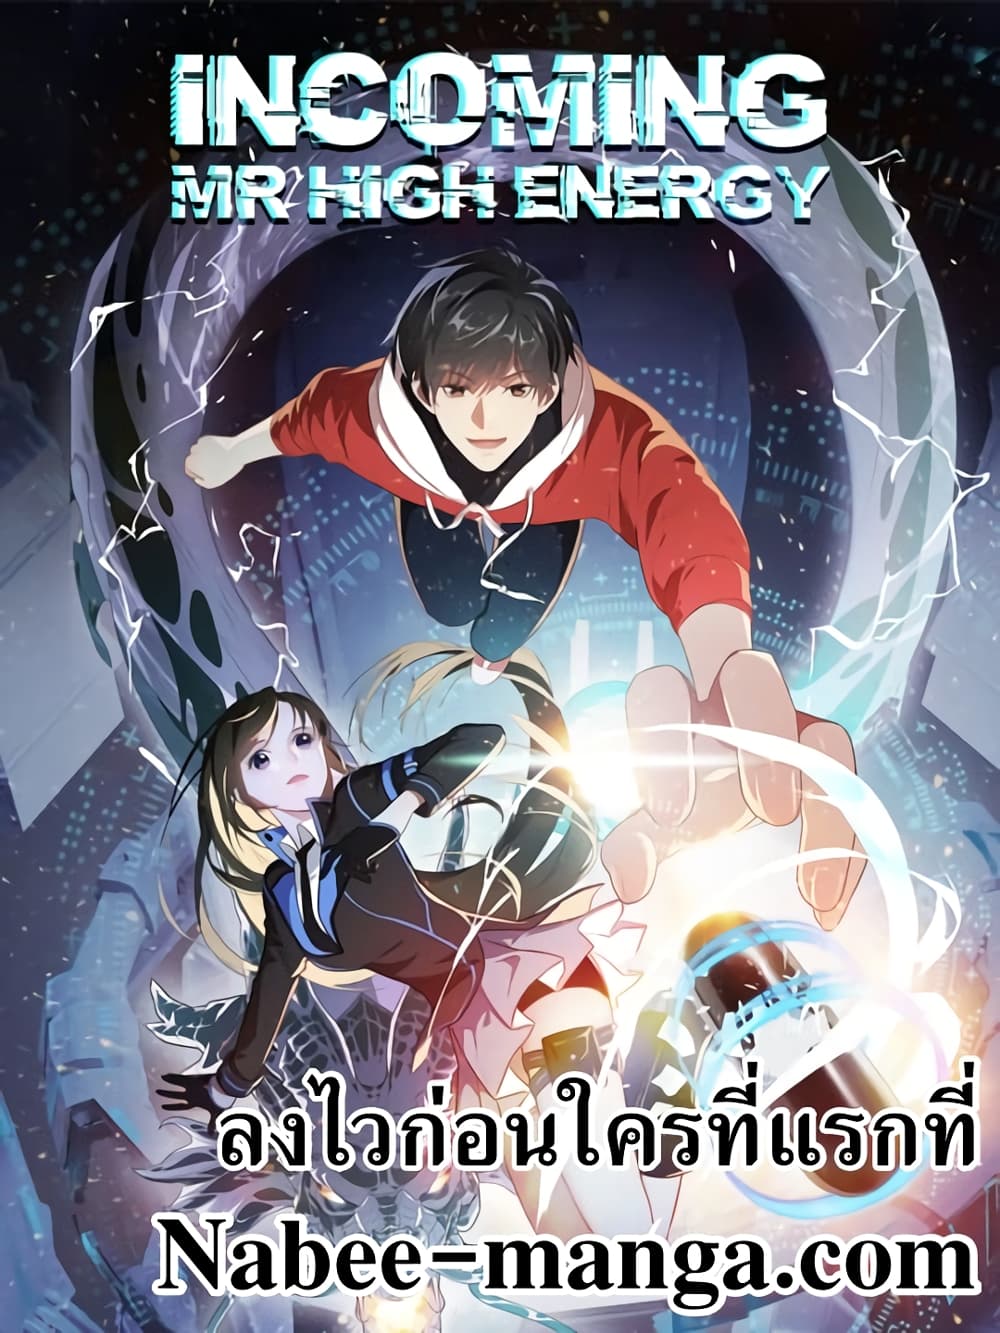 High Energy Strikes 127-127